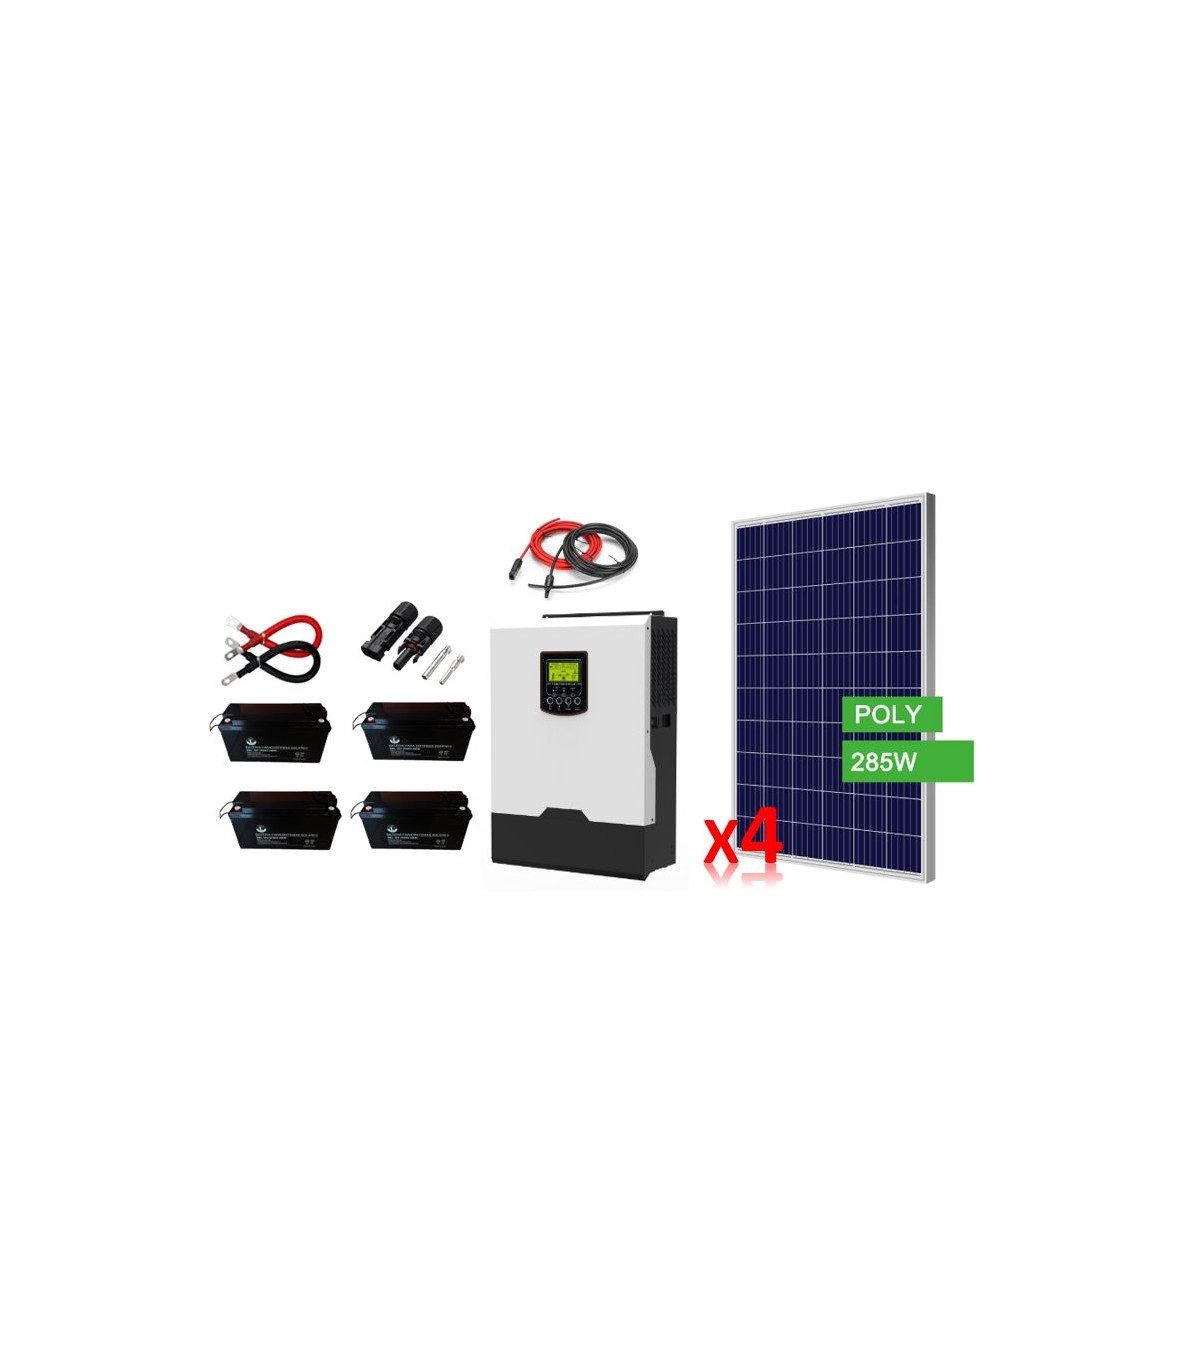 Kit Solar Fotovoltaico Híbrido 1000W para generación eléctrica